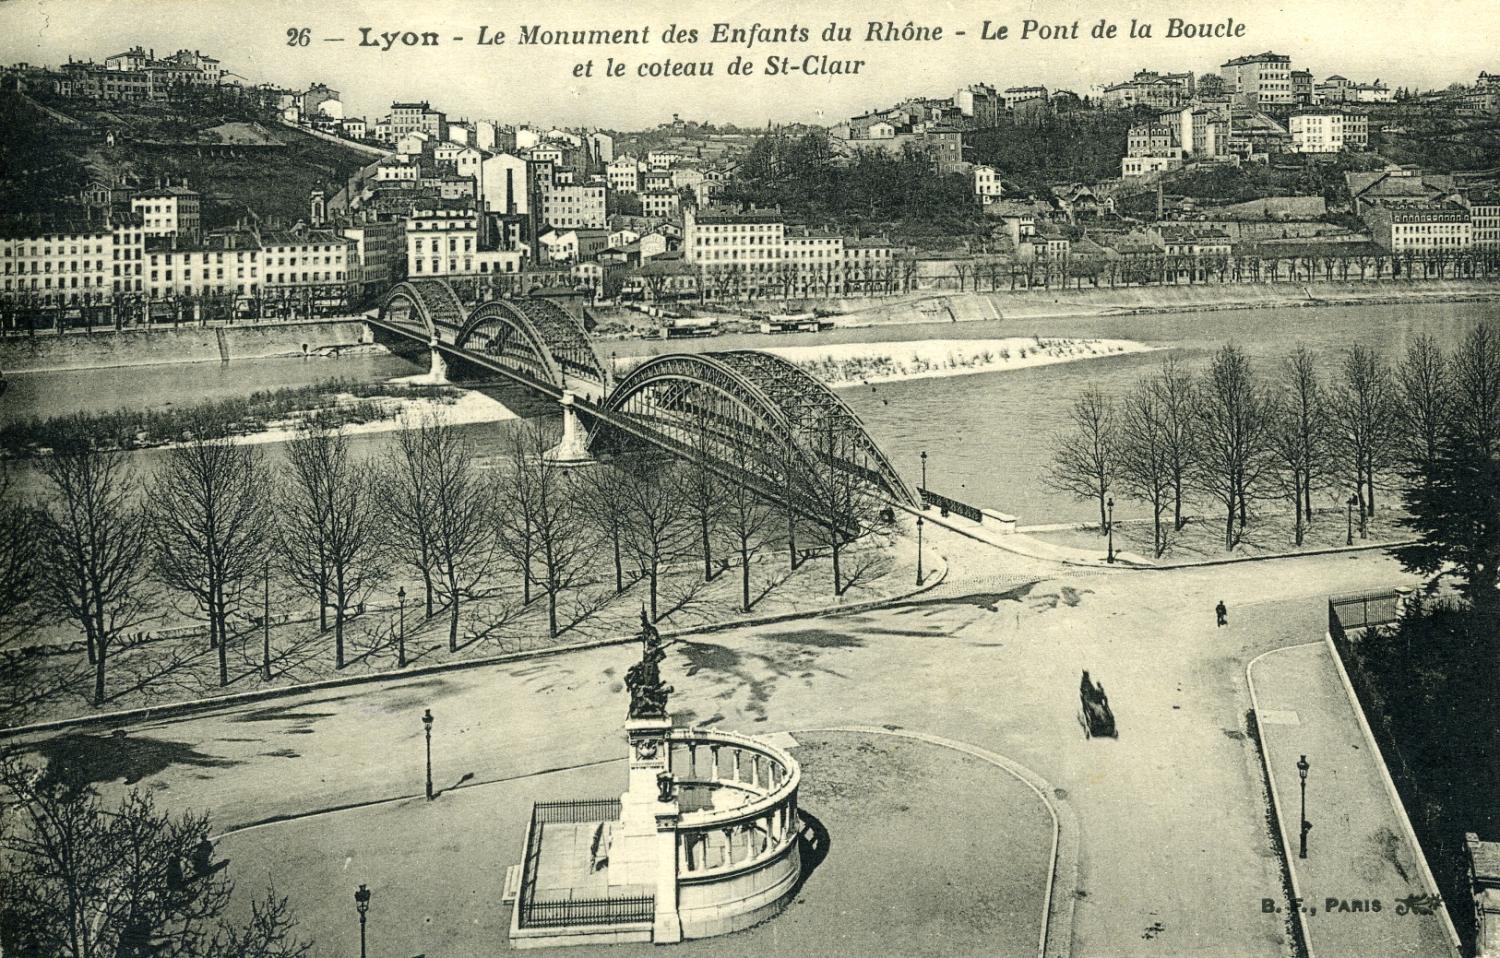 Lyon - Le Monument des Enfants du Rhône - Le Pont de la Boucle et le coteau de St-Clair